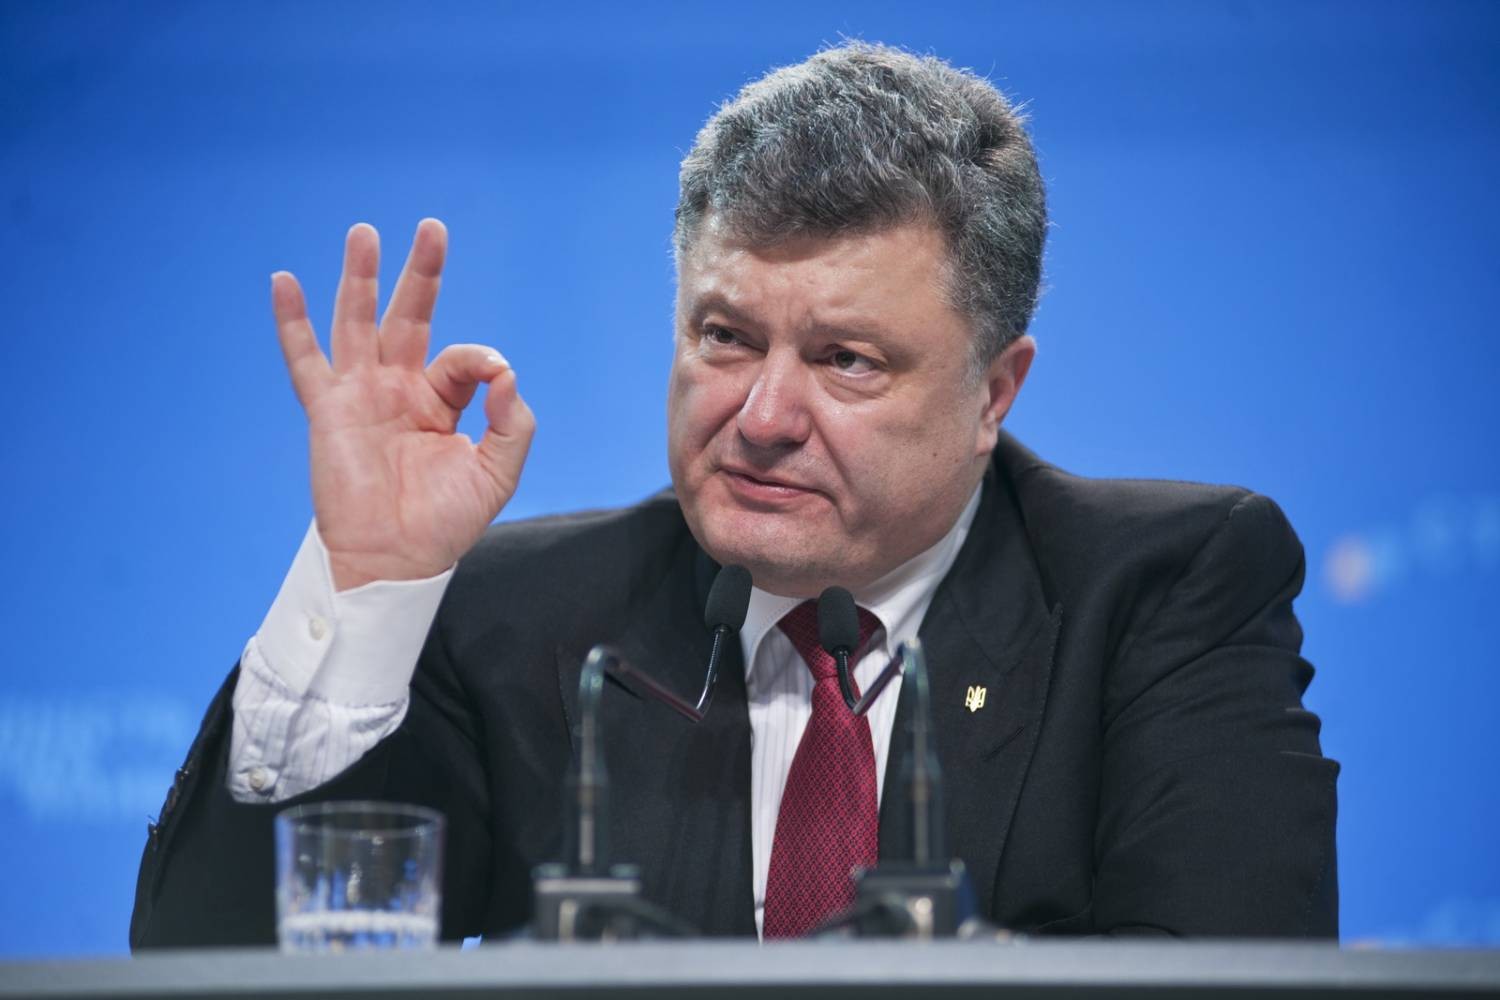 Петр Порошенко, Президент Украины